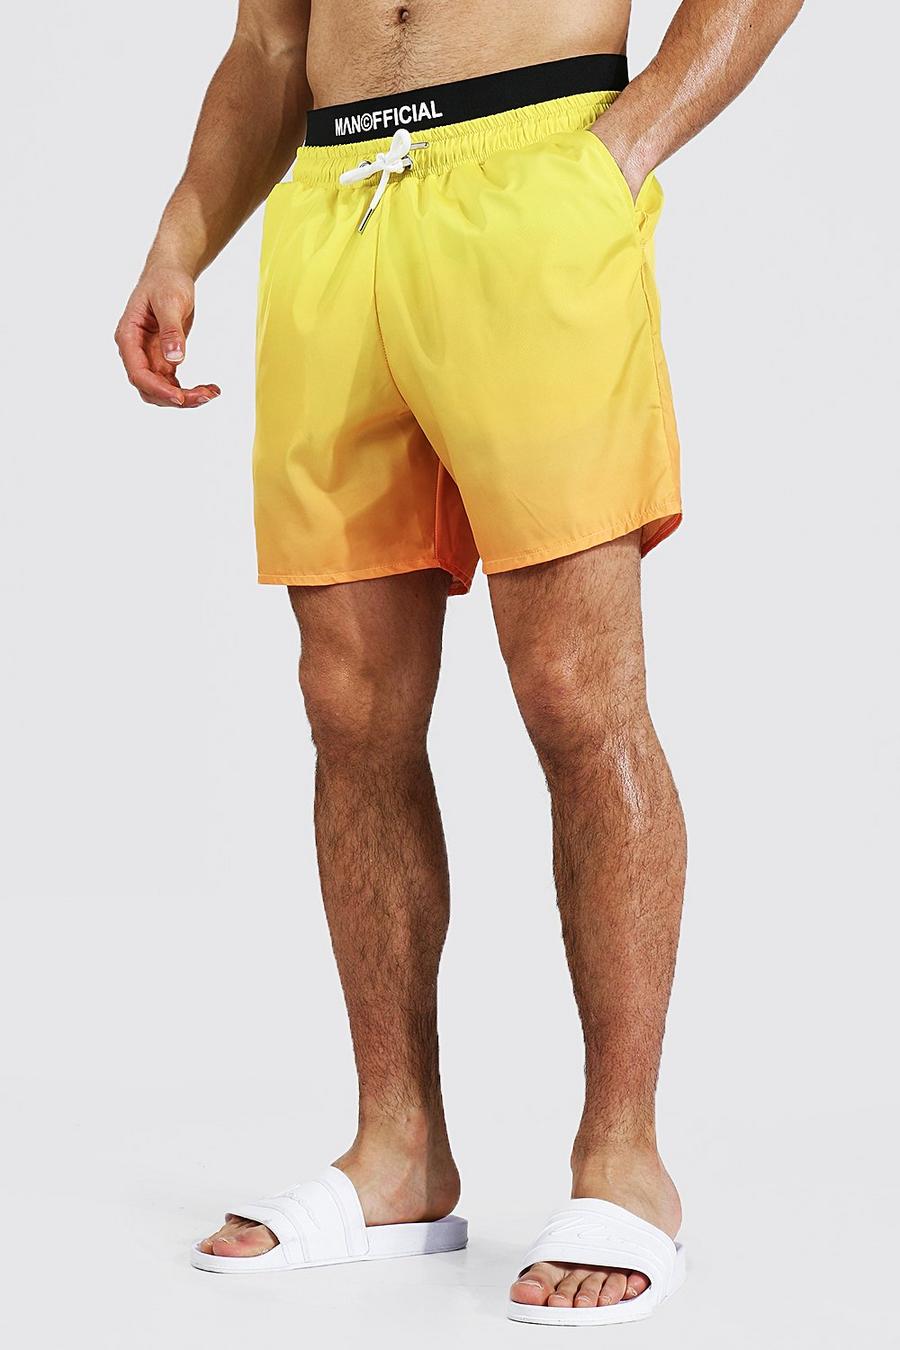 צהוב שורט בגד ים באורך בינוני בגוני אומברה עם כיתוב Man Official image number 1